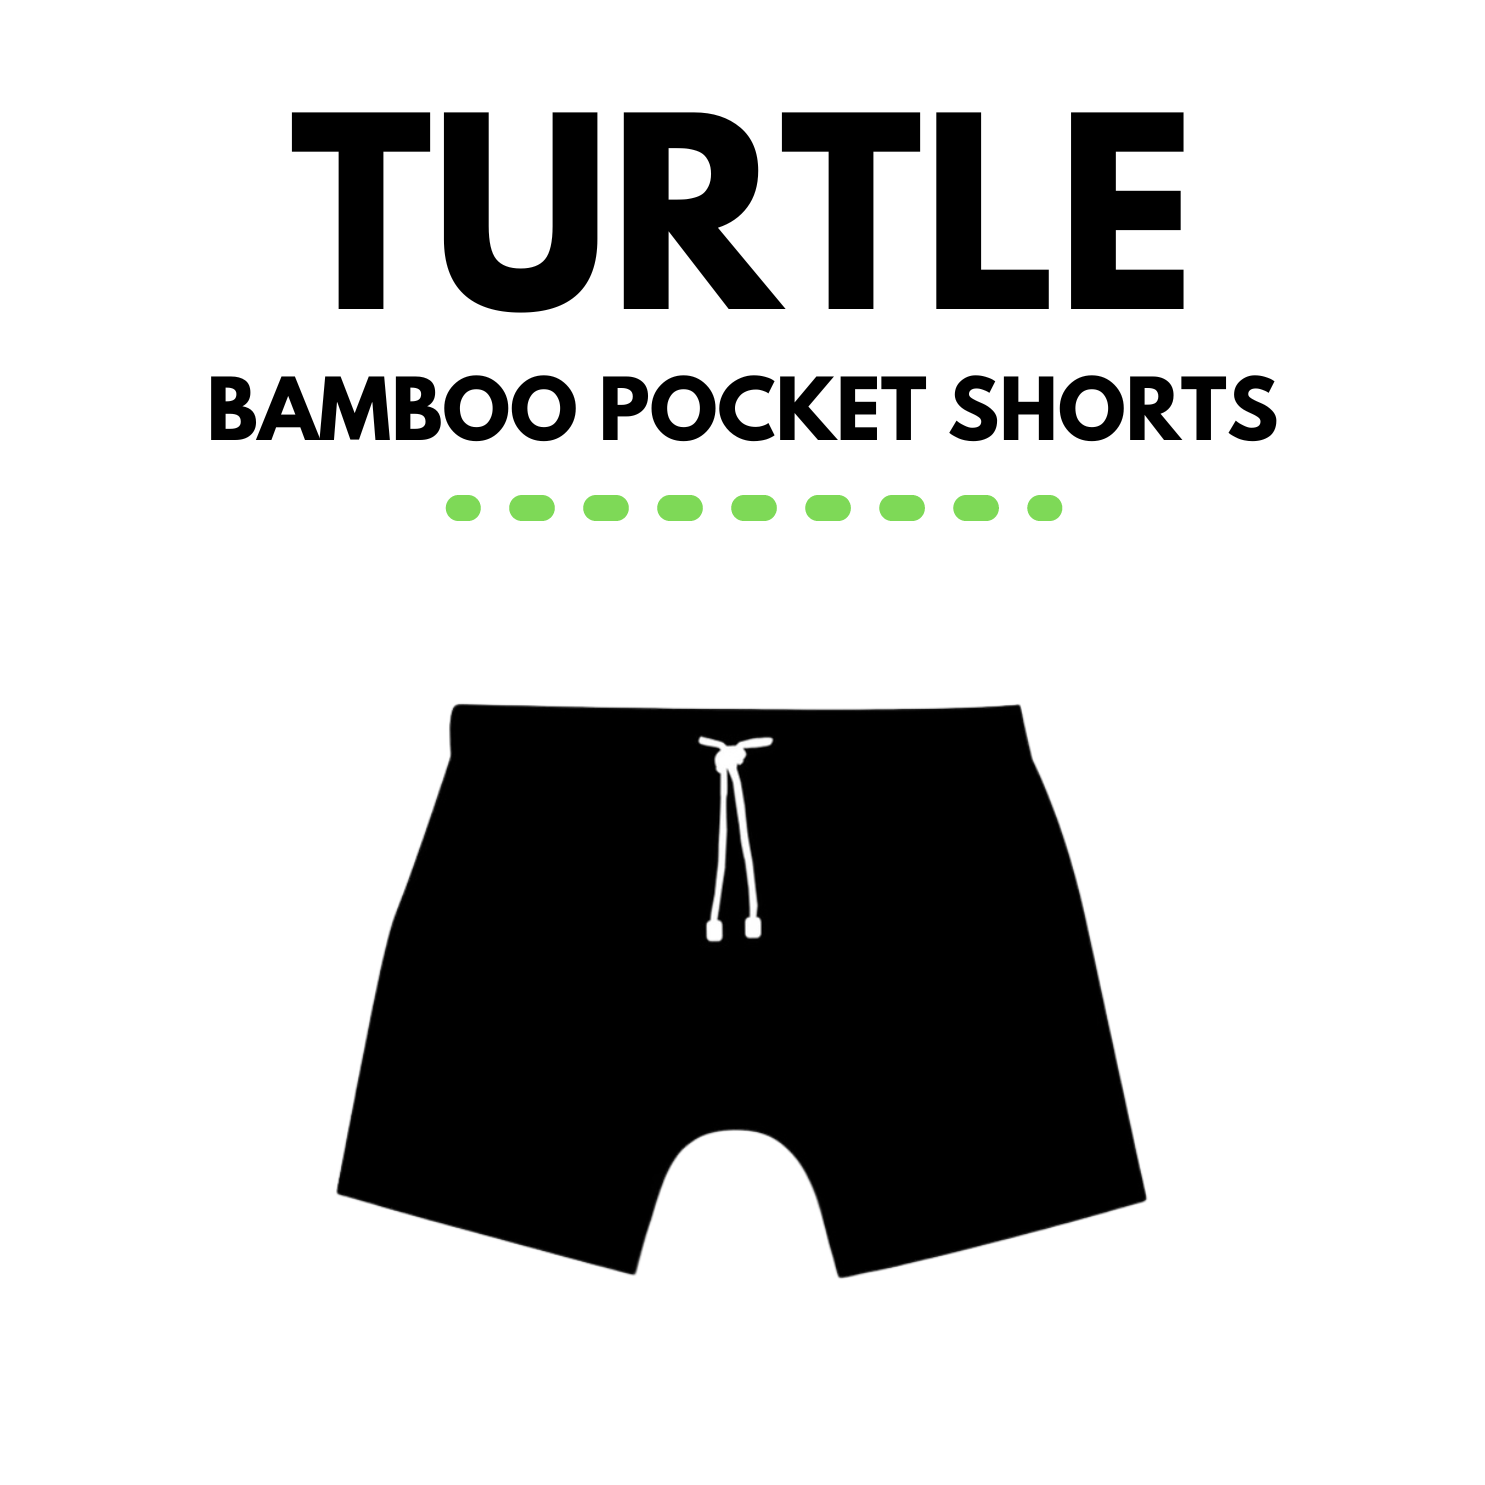 Character Bamboo Pocket Shorts - George Hats